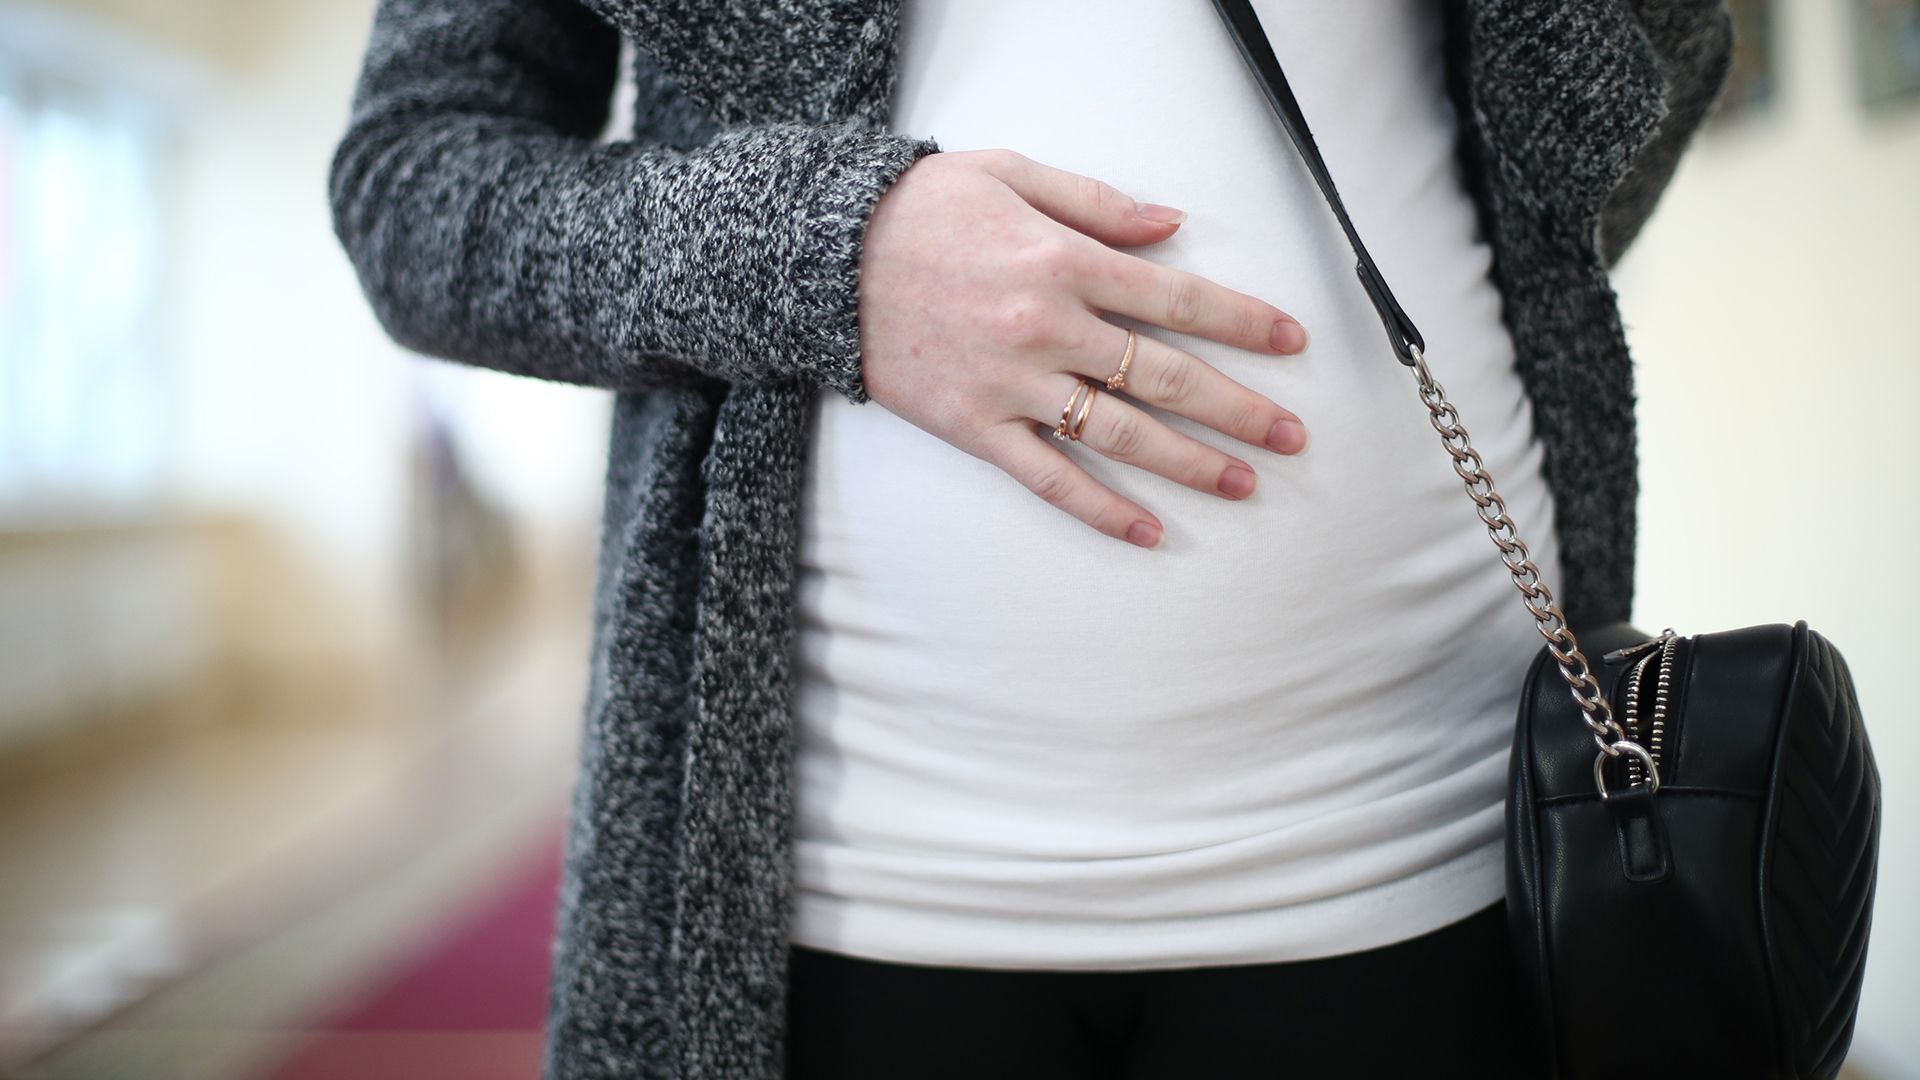 Mujeres rusas embarazadas: Buenos Aires para dar a luz